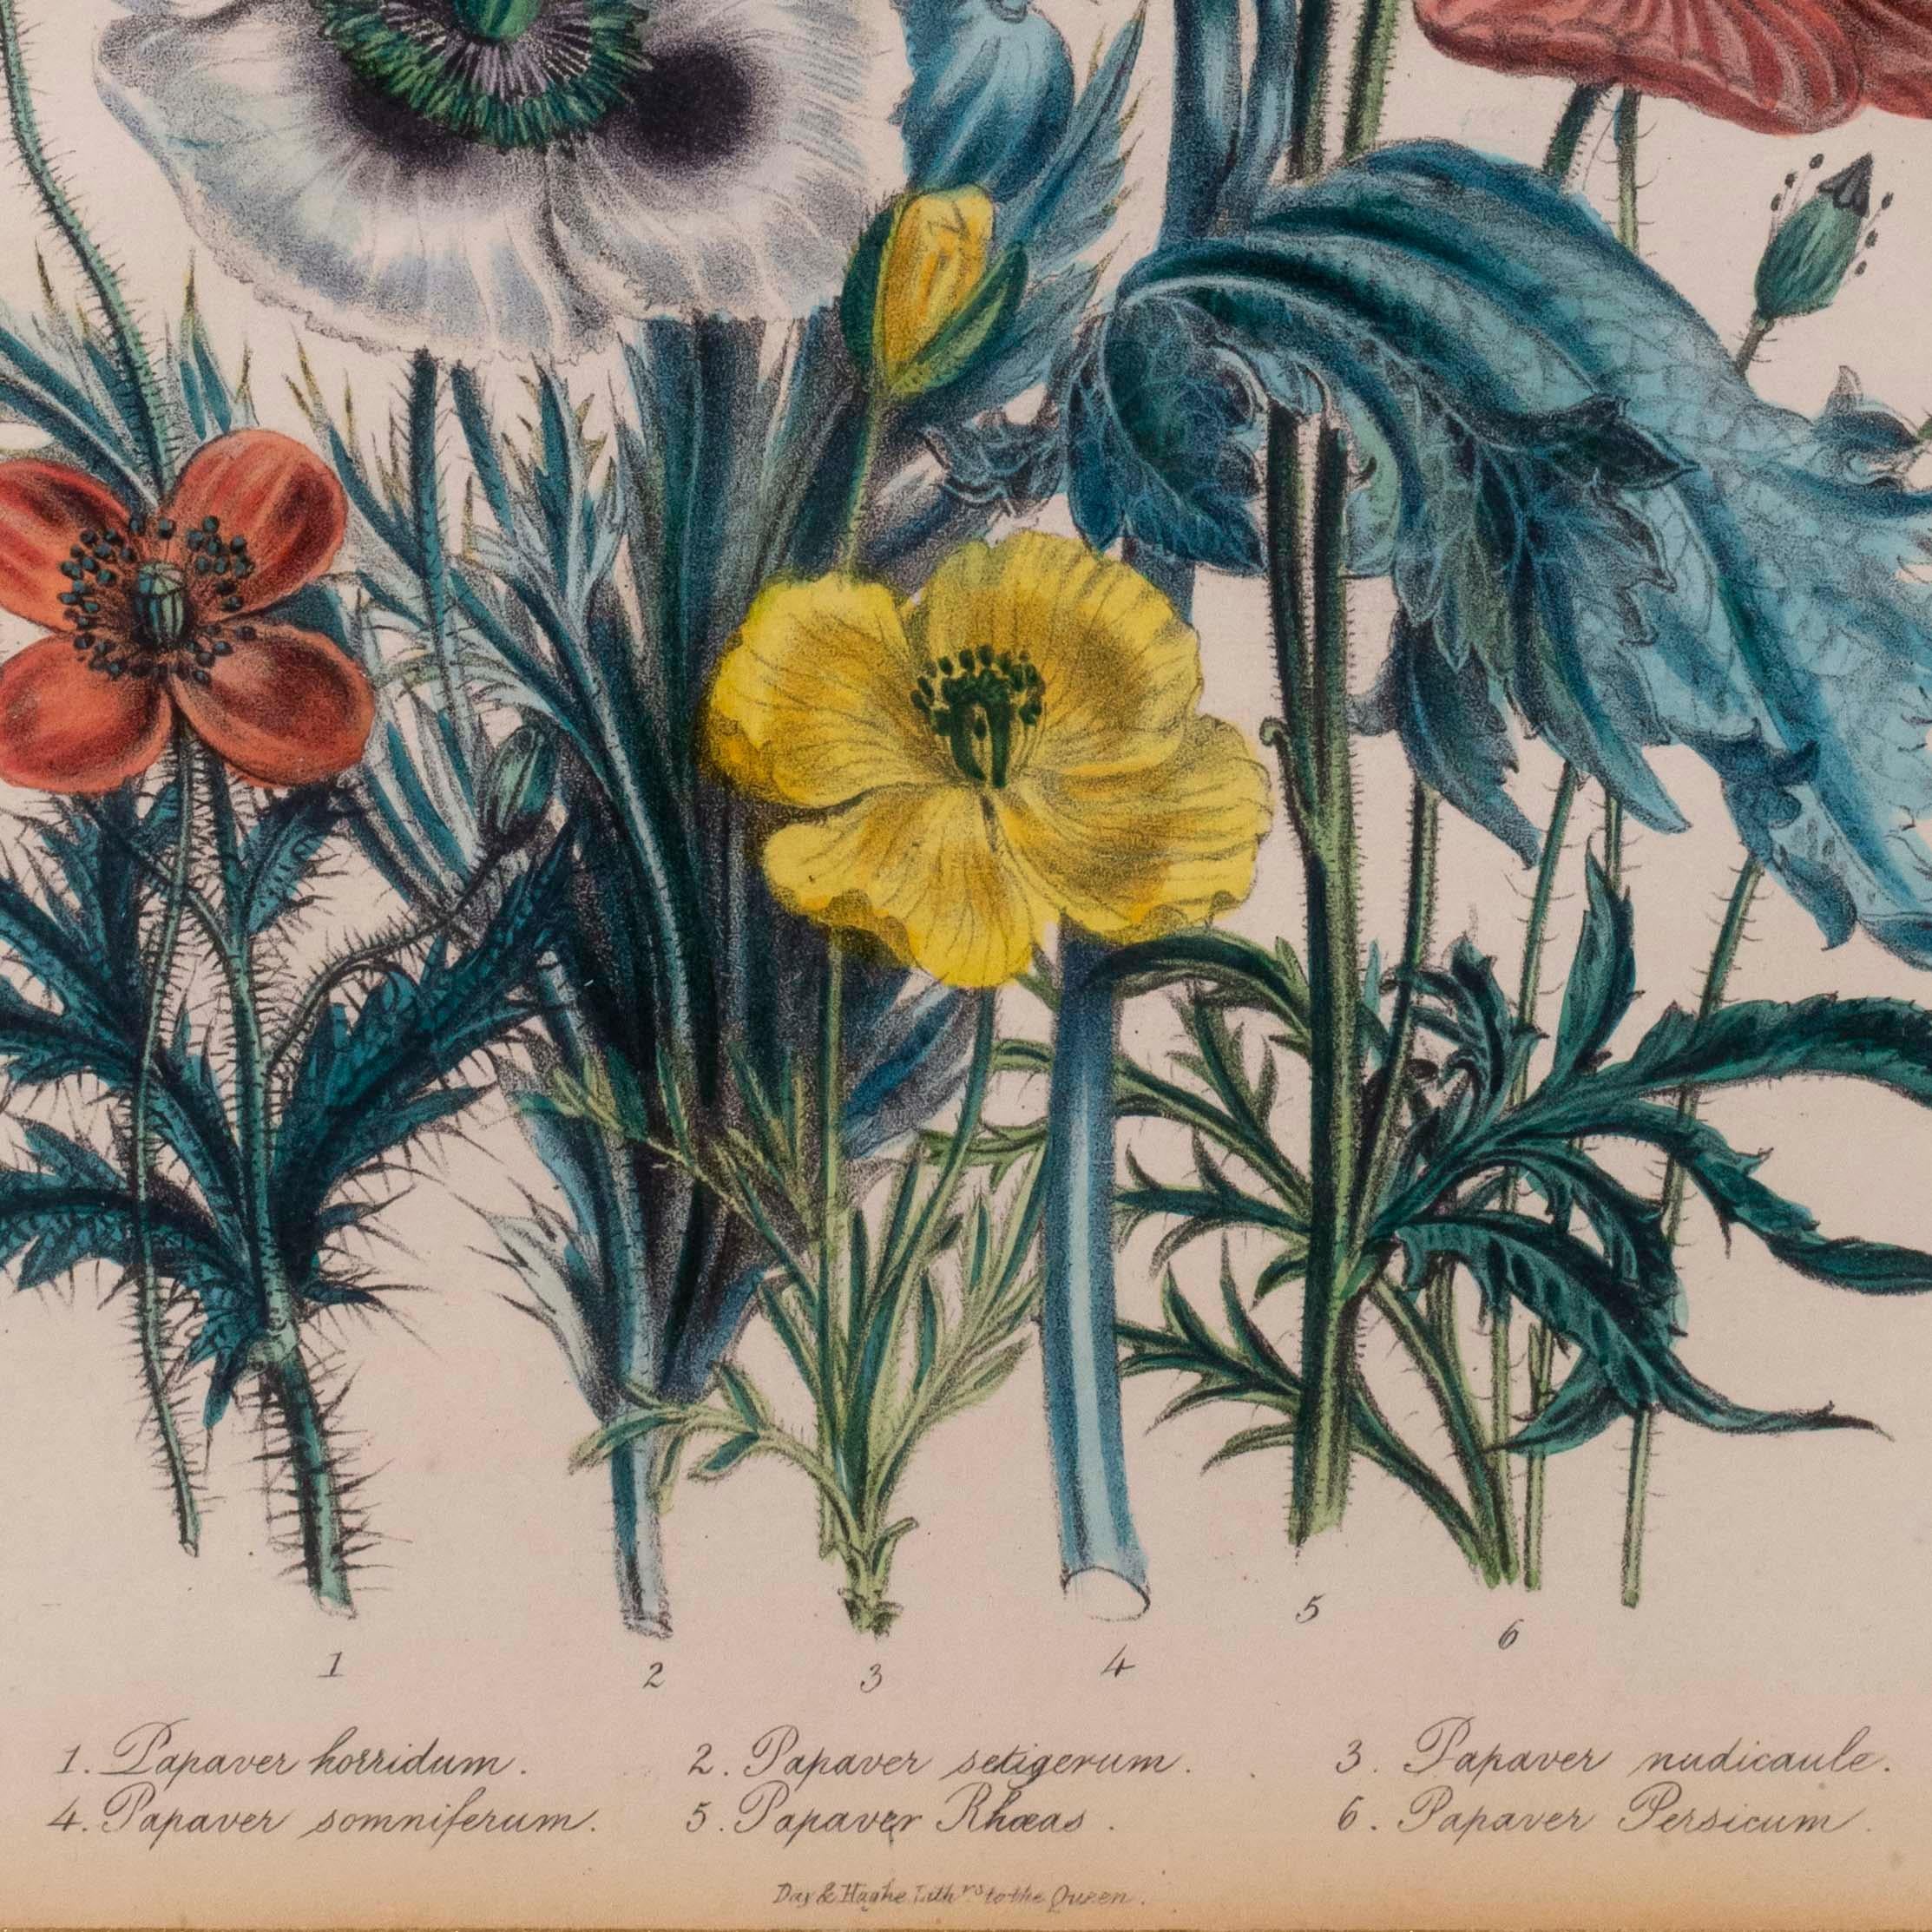 Ein exquisiter Stich mit lebendiger Original-Handkolorierung, aus der seltenen Erstausgabe von British Wild Flowers, London: William Smith, 1849. 

Warum wir sie mögen
Diese wunderschönen handkolorierten, lebendigen und saftigen Drucke passen